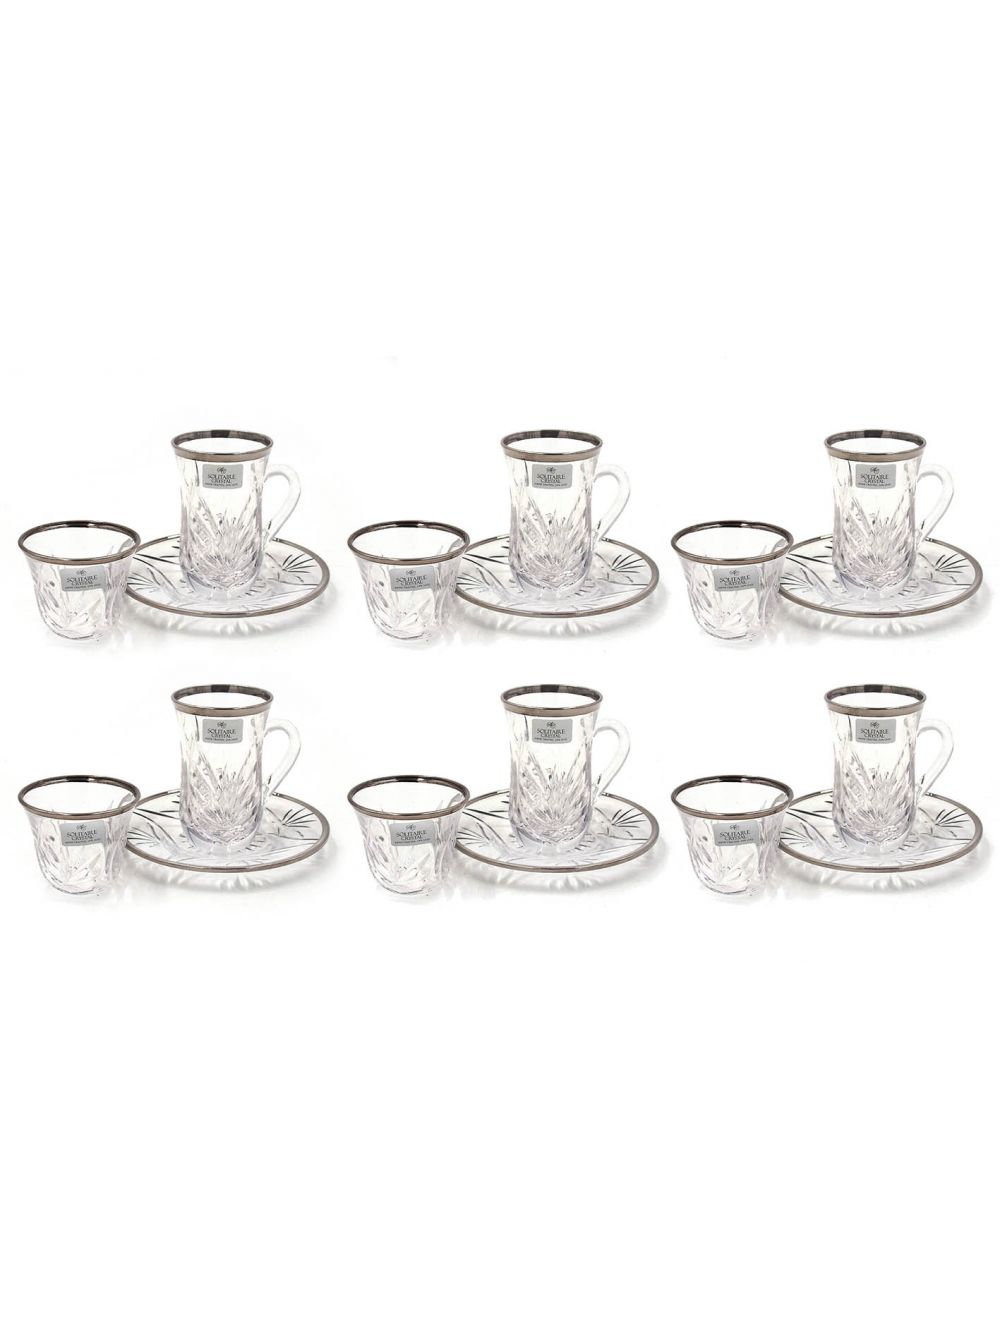 Solitaire 18 Pieces Tea Cup & Saucer Set